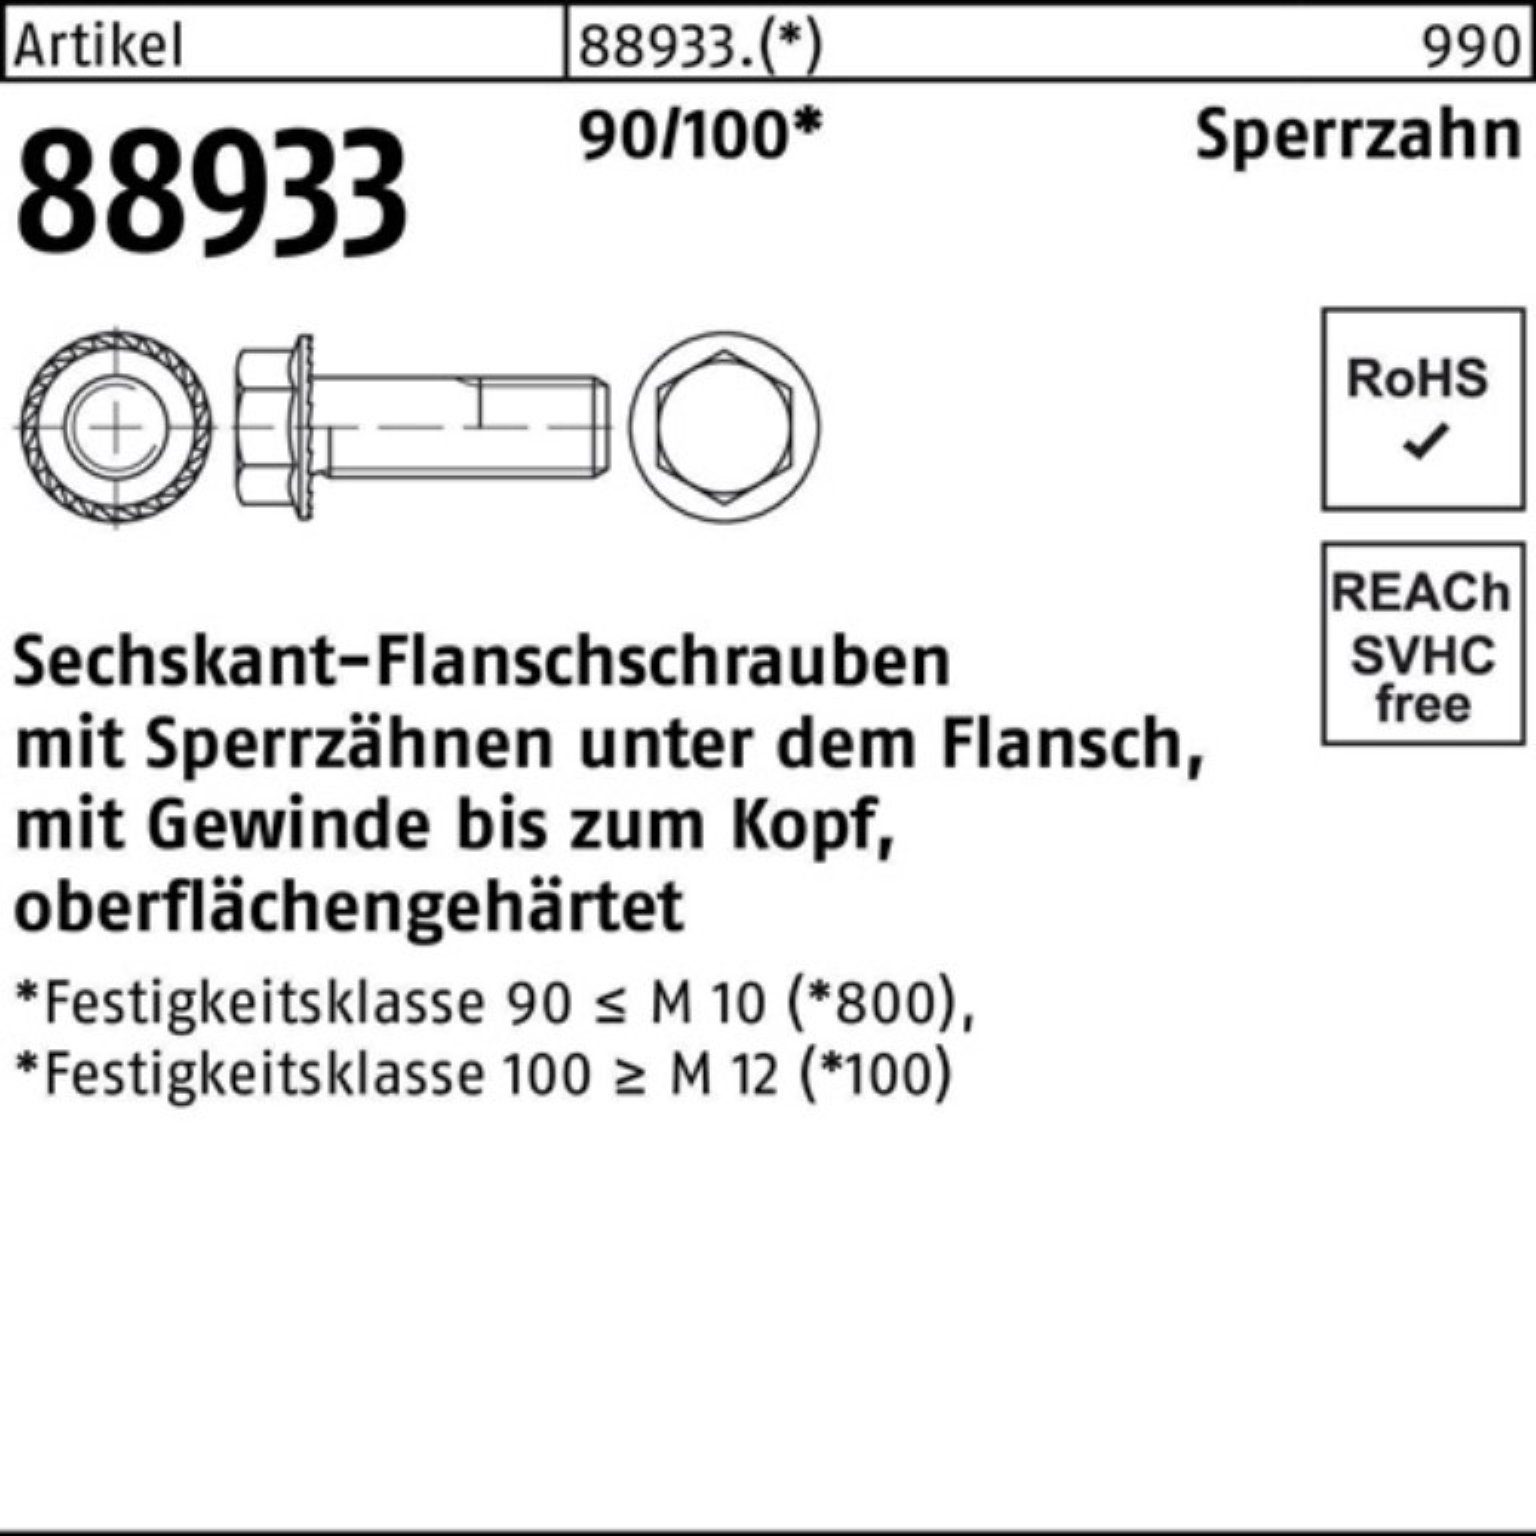 Schraube 10 Sechskantflanschschraube VG 500er 88933 M6x R Sperrz. Reyher 5 Pack 90/100